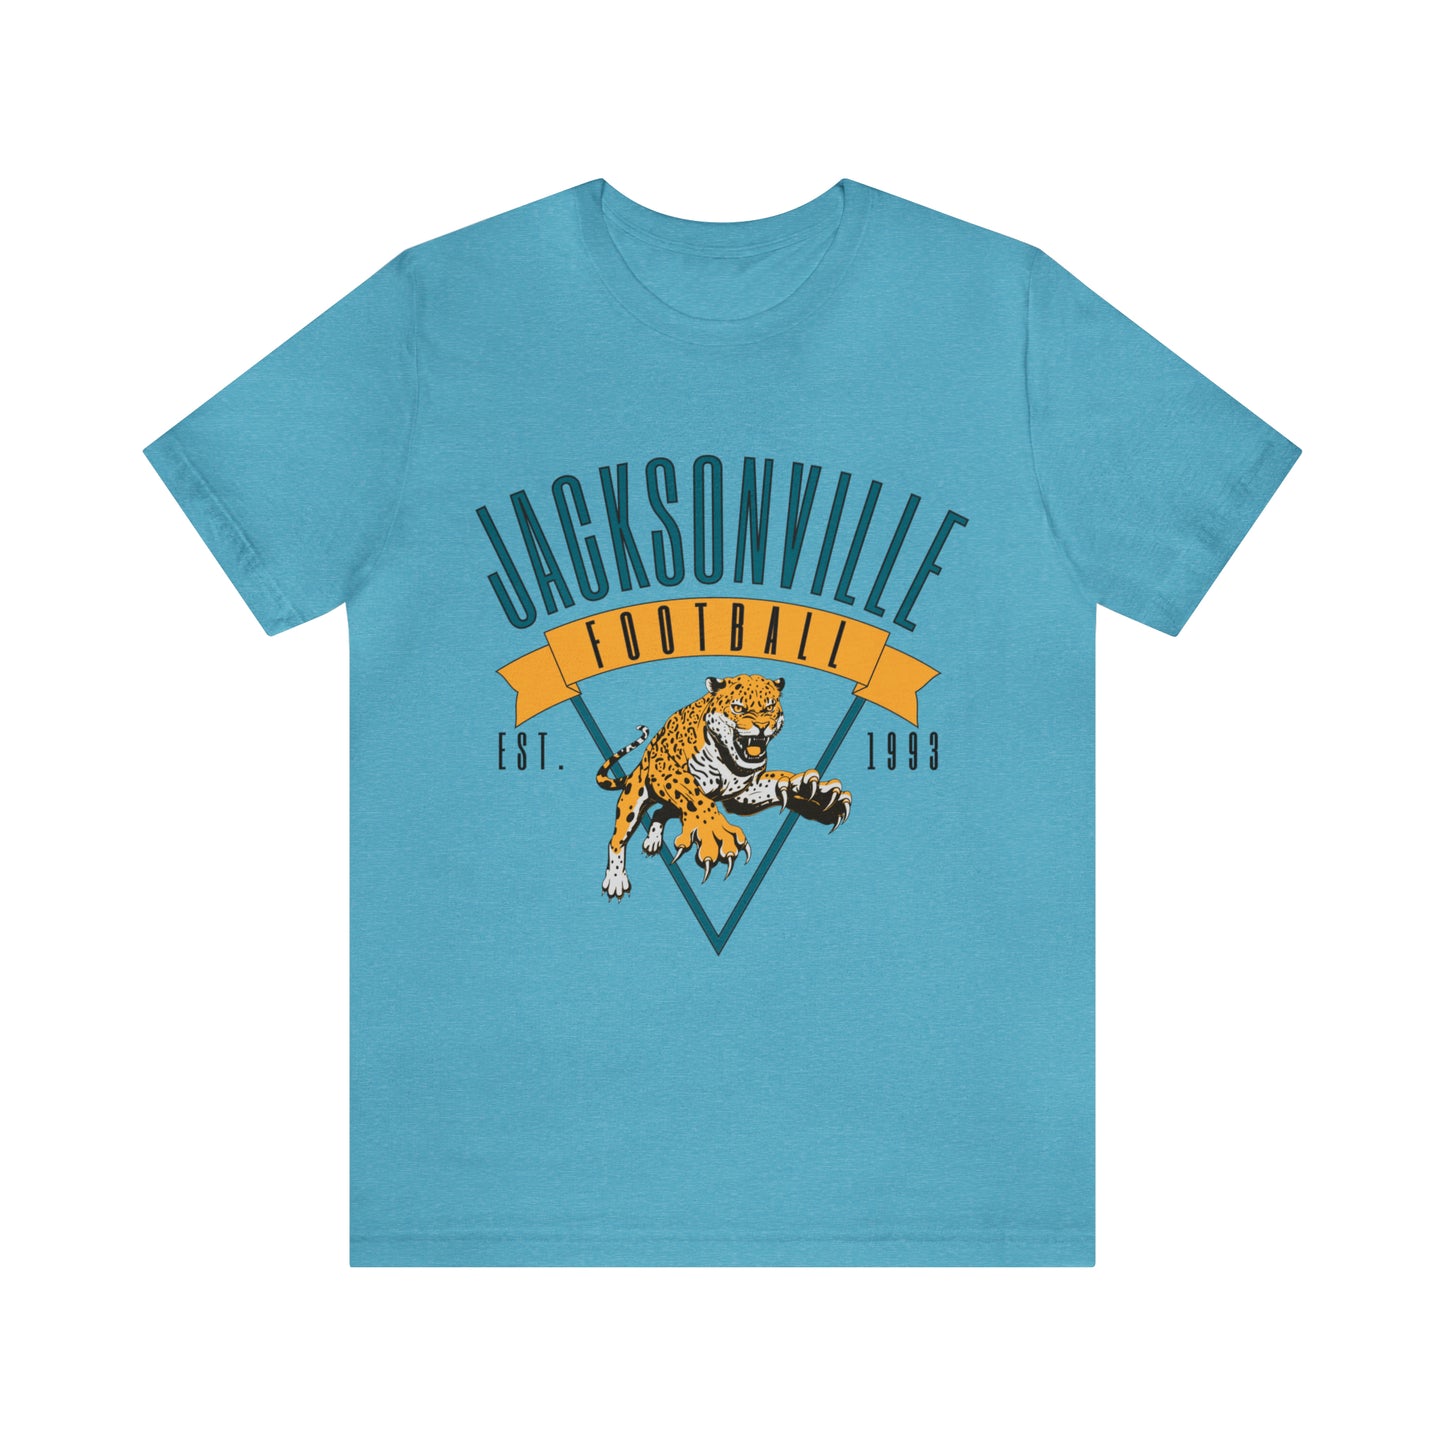 Vintage Jacksonville Jaguars T-Shirt - Retro NFL Football Short Sleeve Oversized Men's & Women's T-Shirt - Design 1